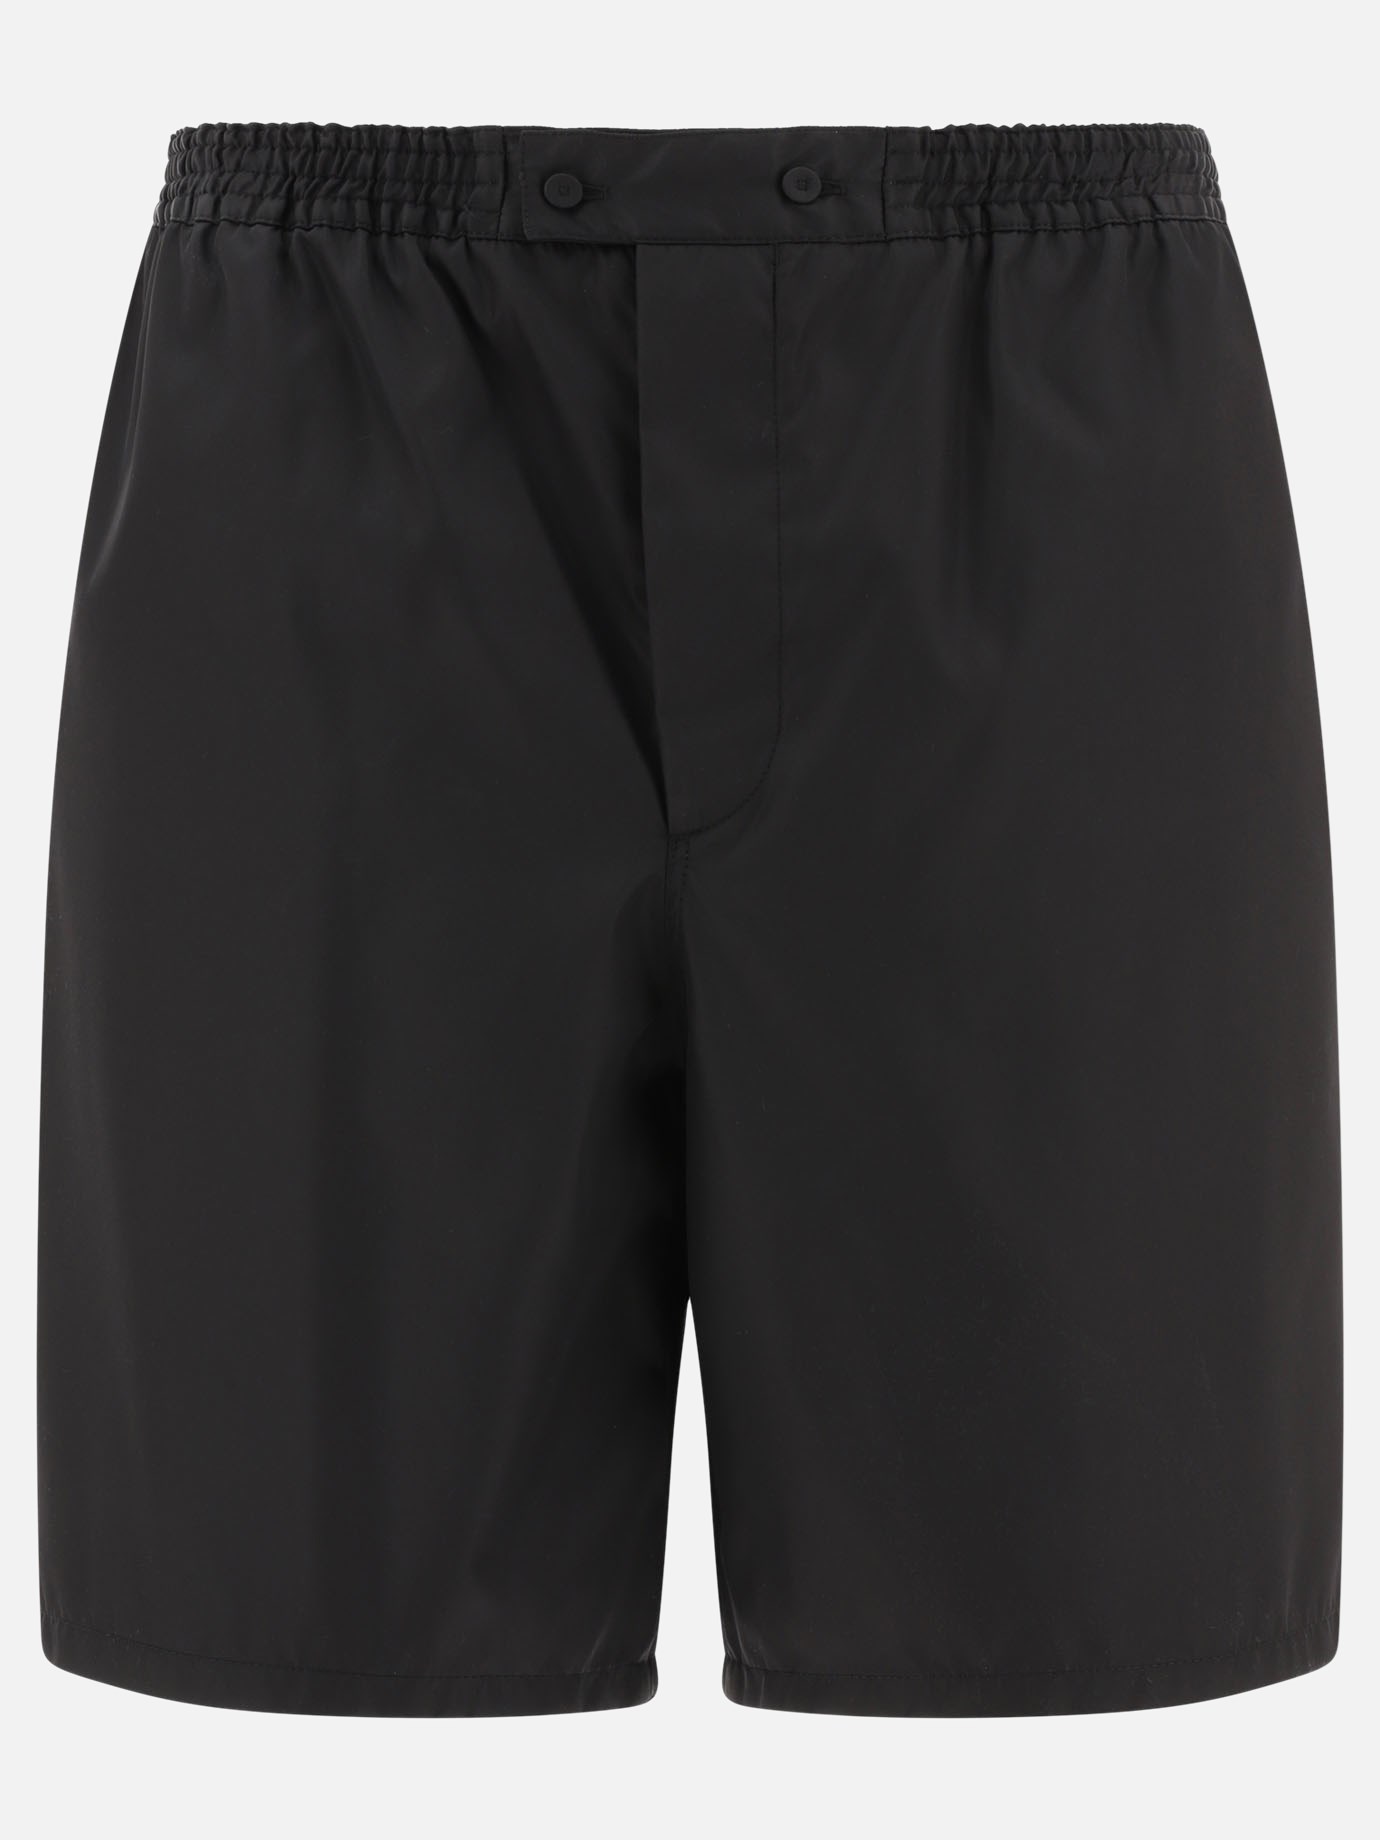  Re-Nylon  shorts by Prada